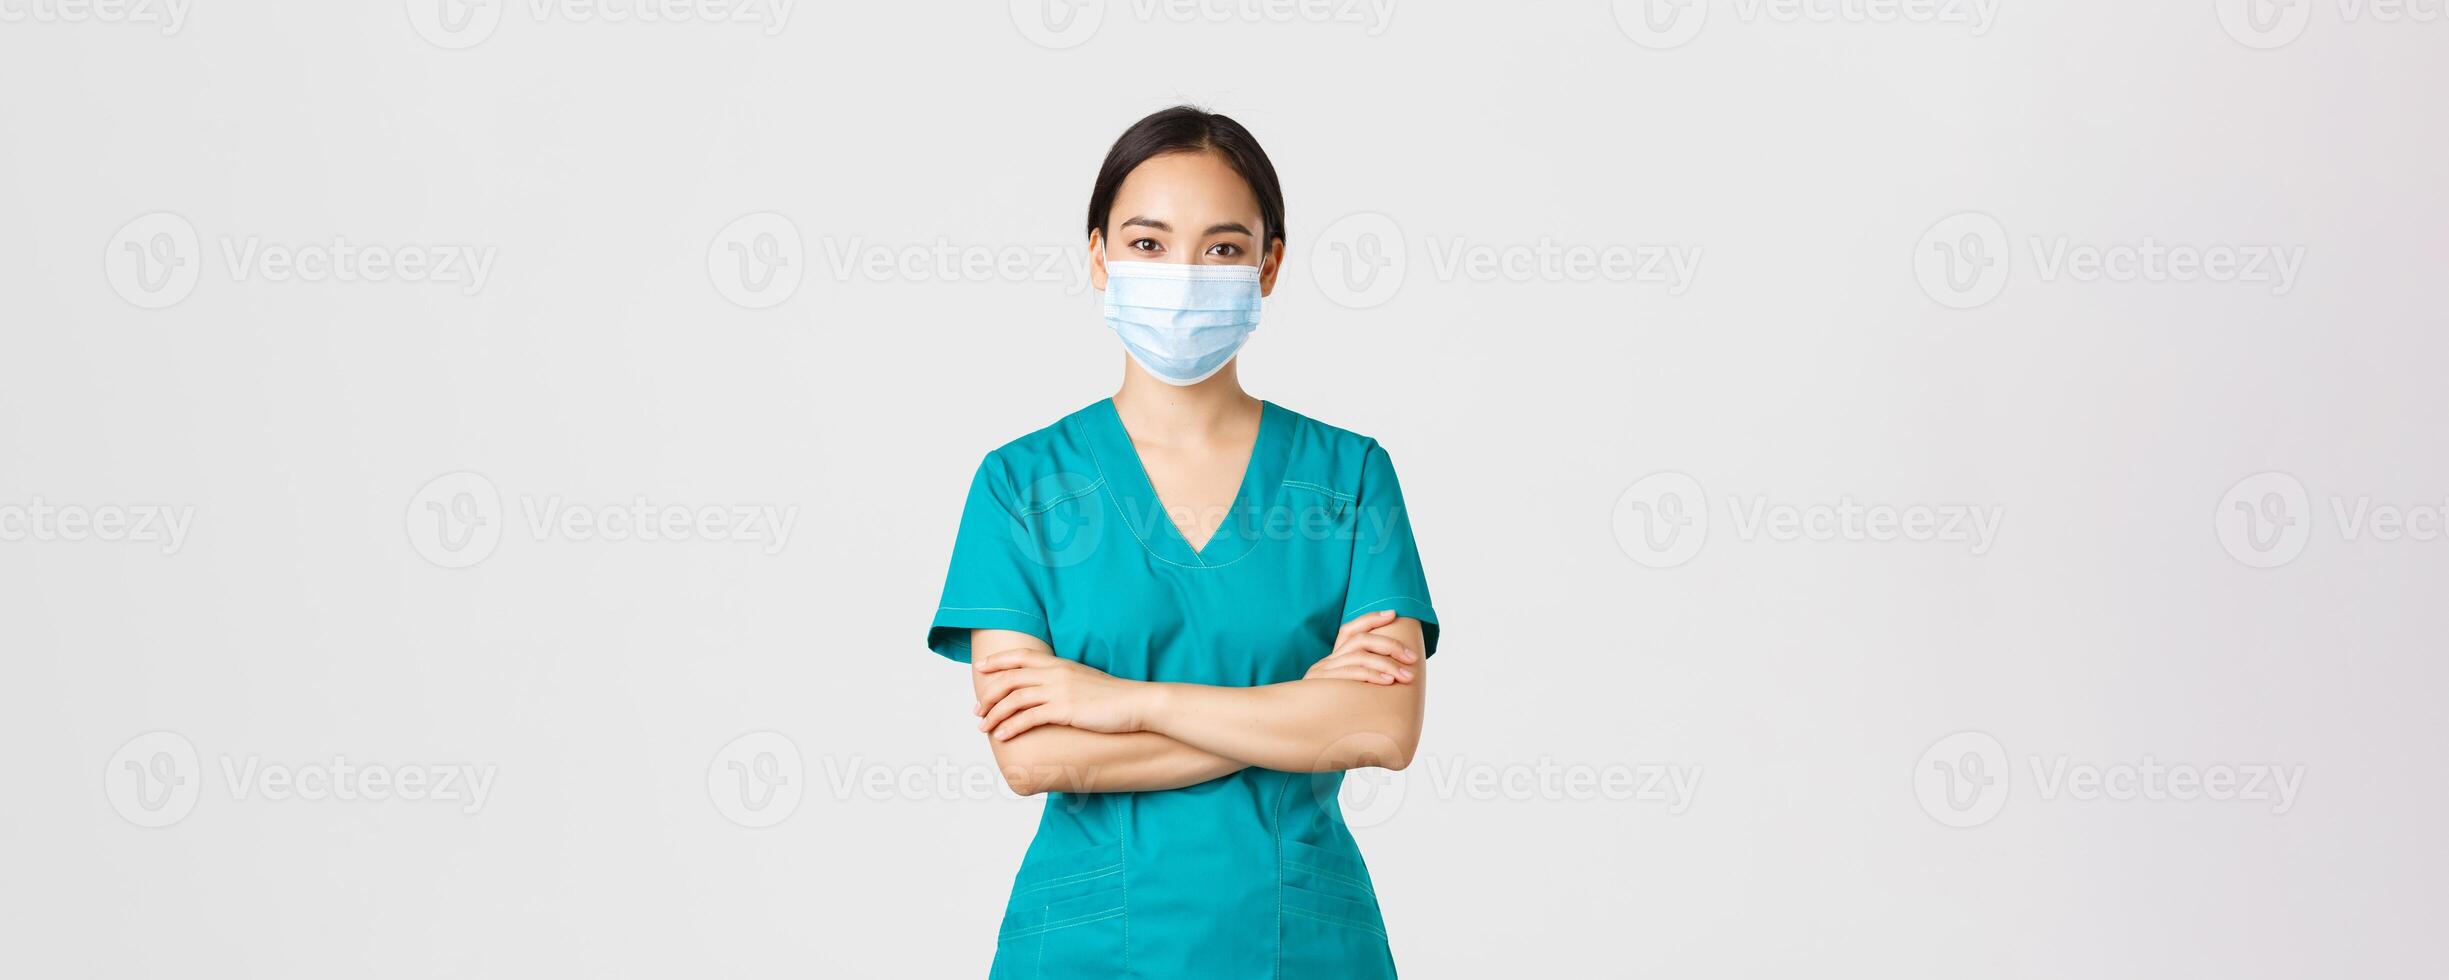 covid19, coronavirus sjukdom, sjukvård arbetare begrepp. leende självsäker asiatisk kvinna läkare, läkare framställning kolla upp, bär scrubs och medicinsk mask, ser fast besluten, vit bakgrund foto